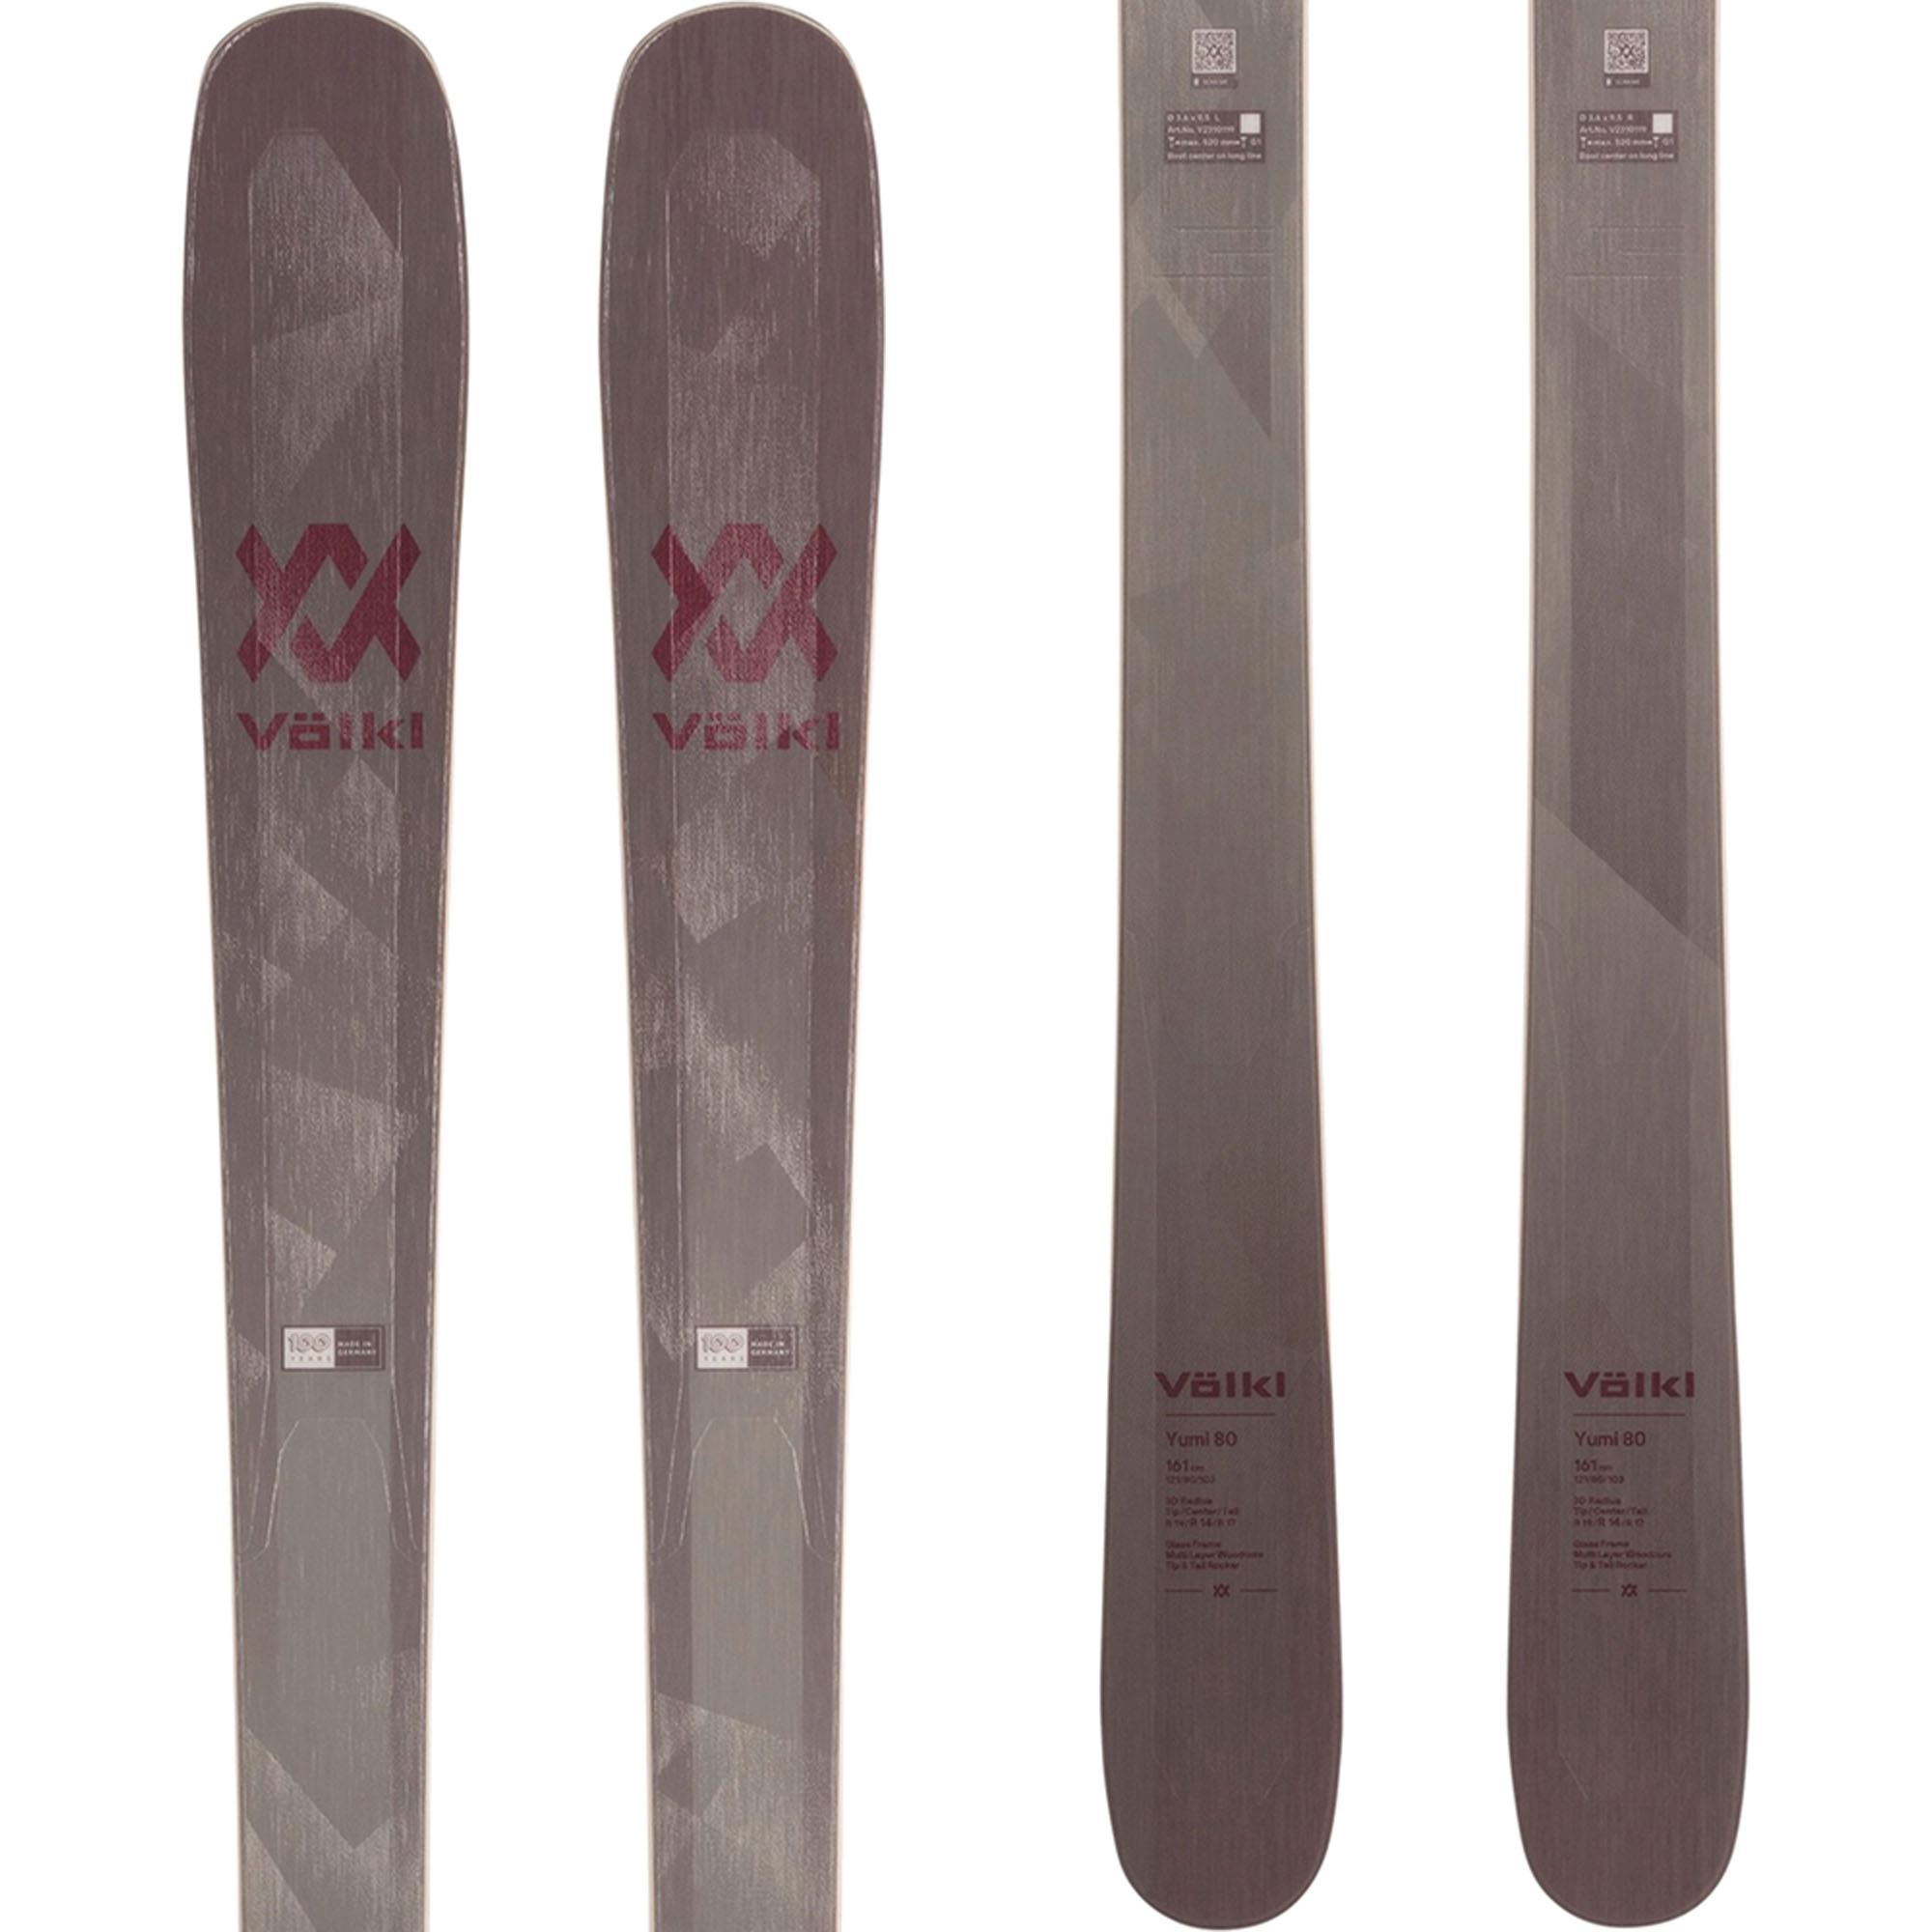 Volkl Yumi 80 Women's Skis